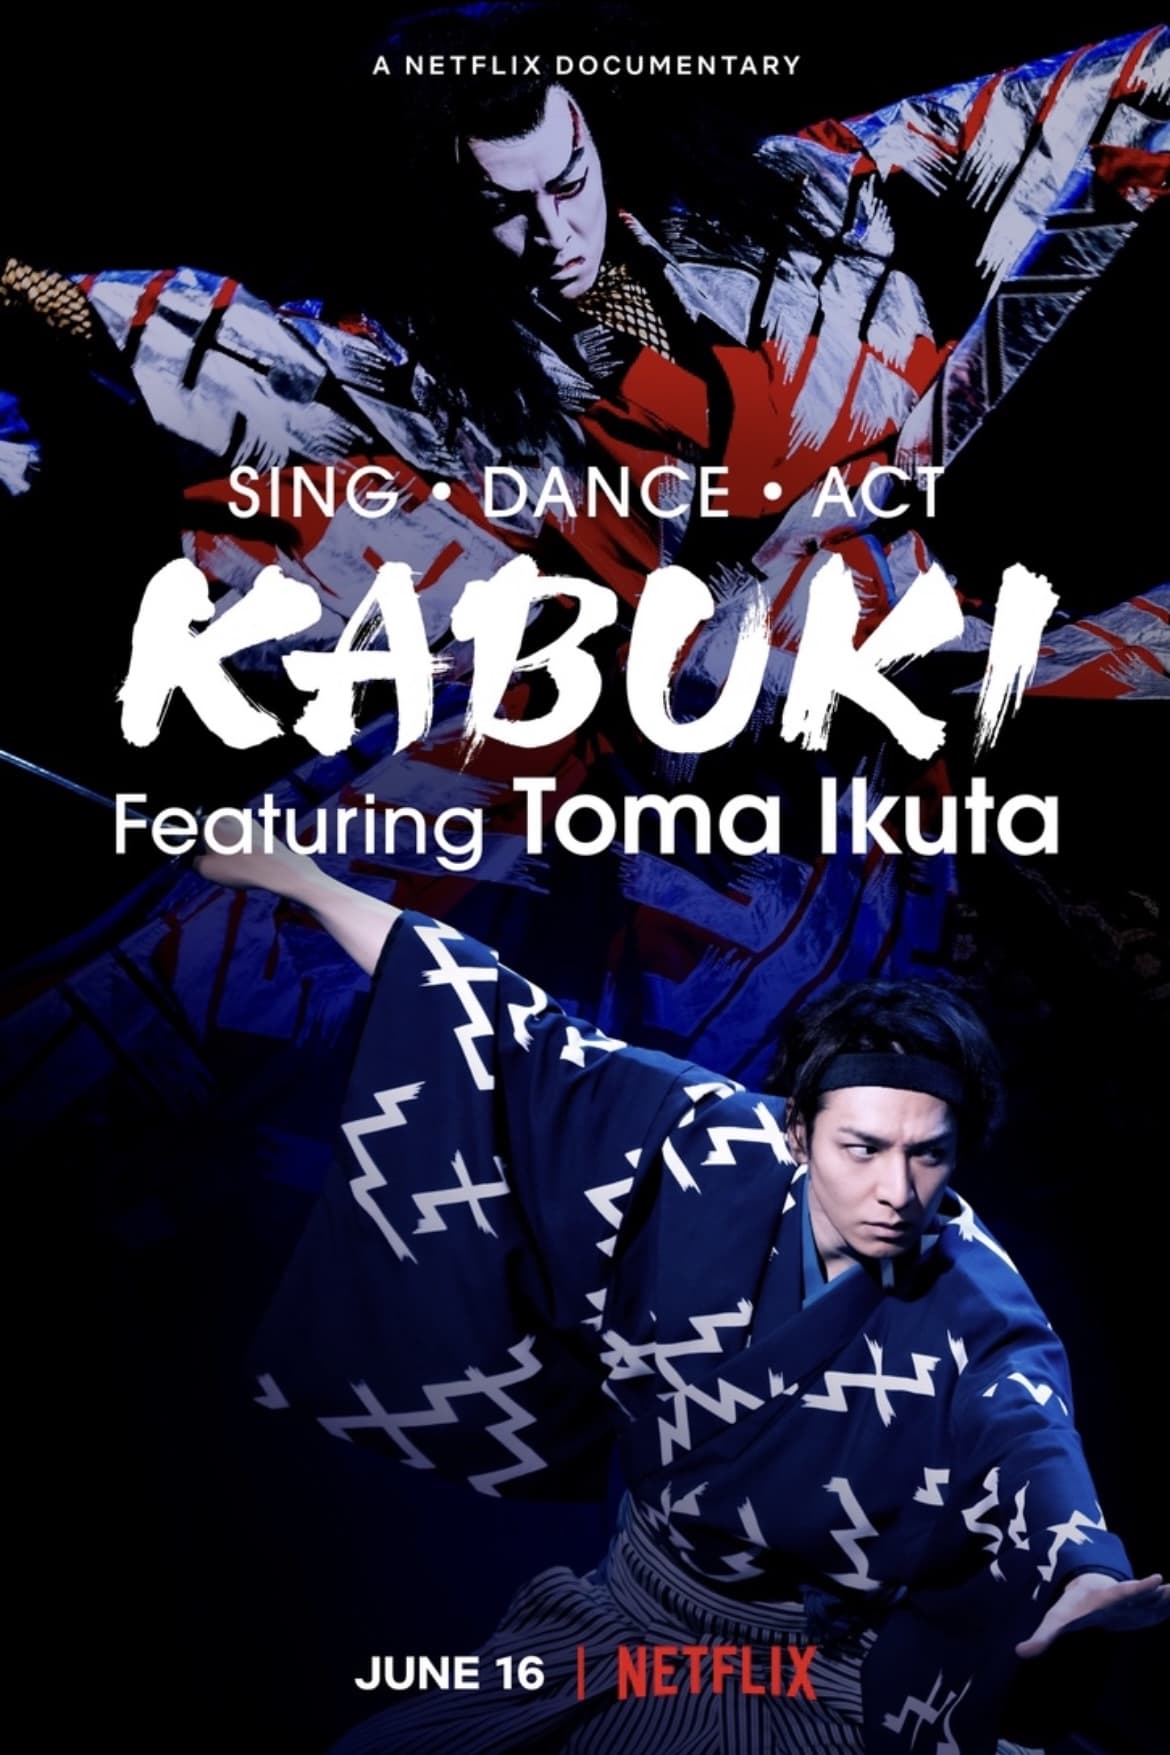 Banner Phim Ikuta Toma: Thử thách ca vũ kỹ (Sing, Dance, Act: Kabuki featuring Toma Ikuta)